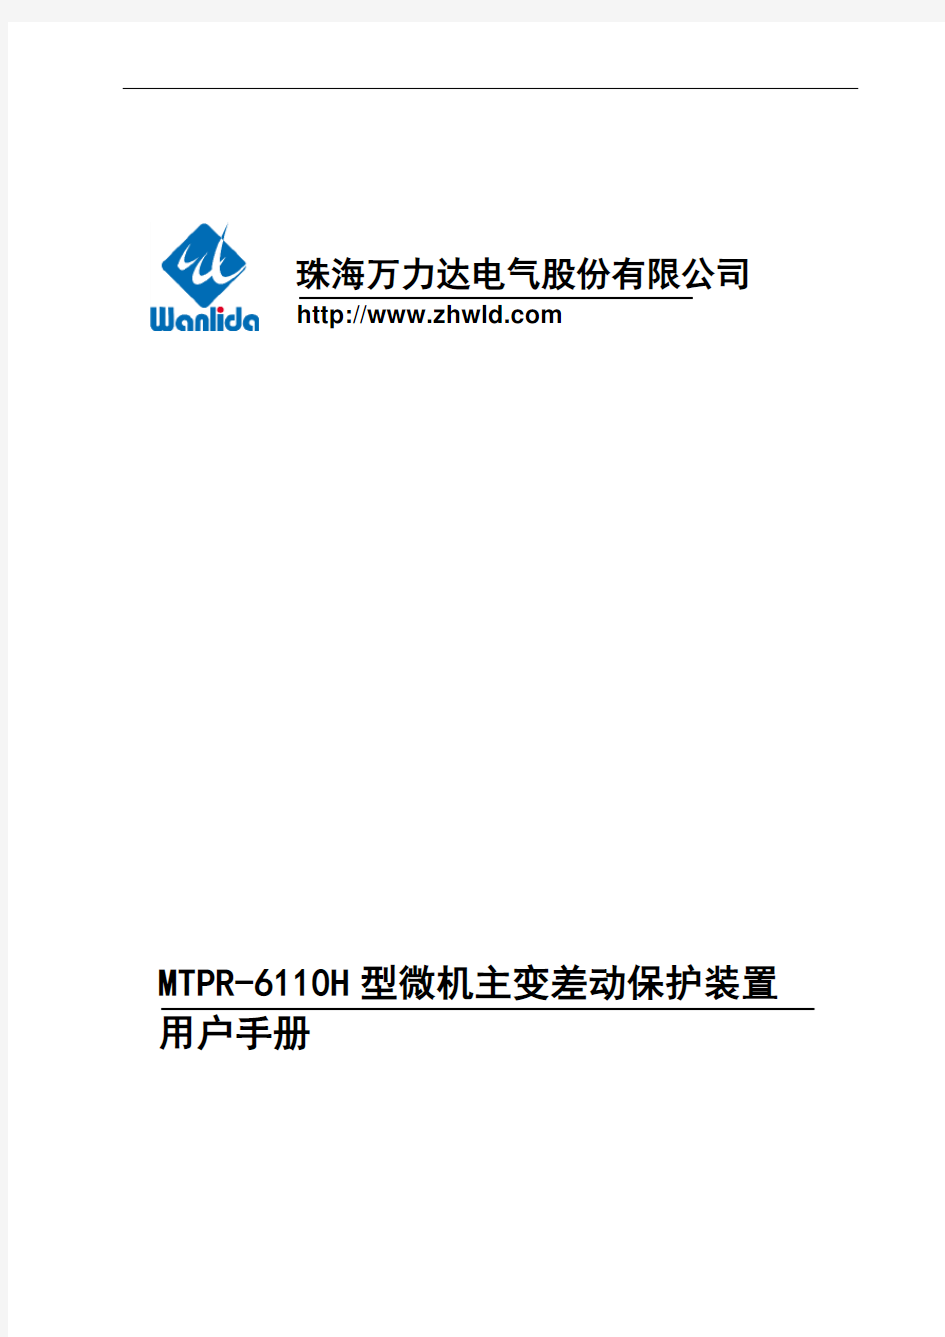 mtpr-6110h型微机主变差动保护装置用户手册(050814)